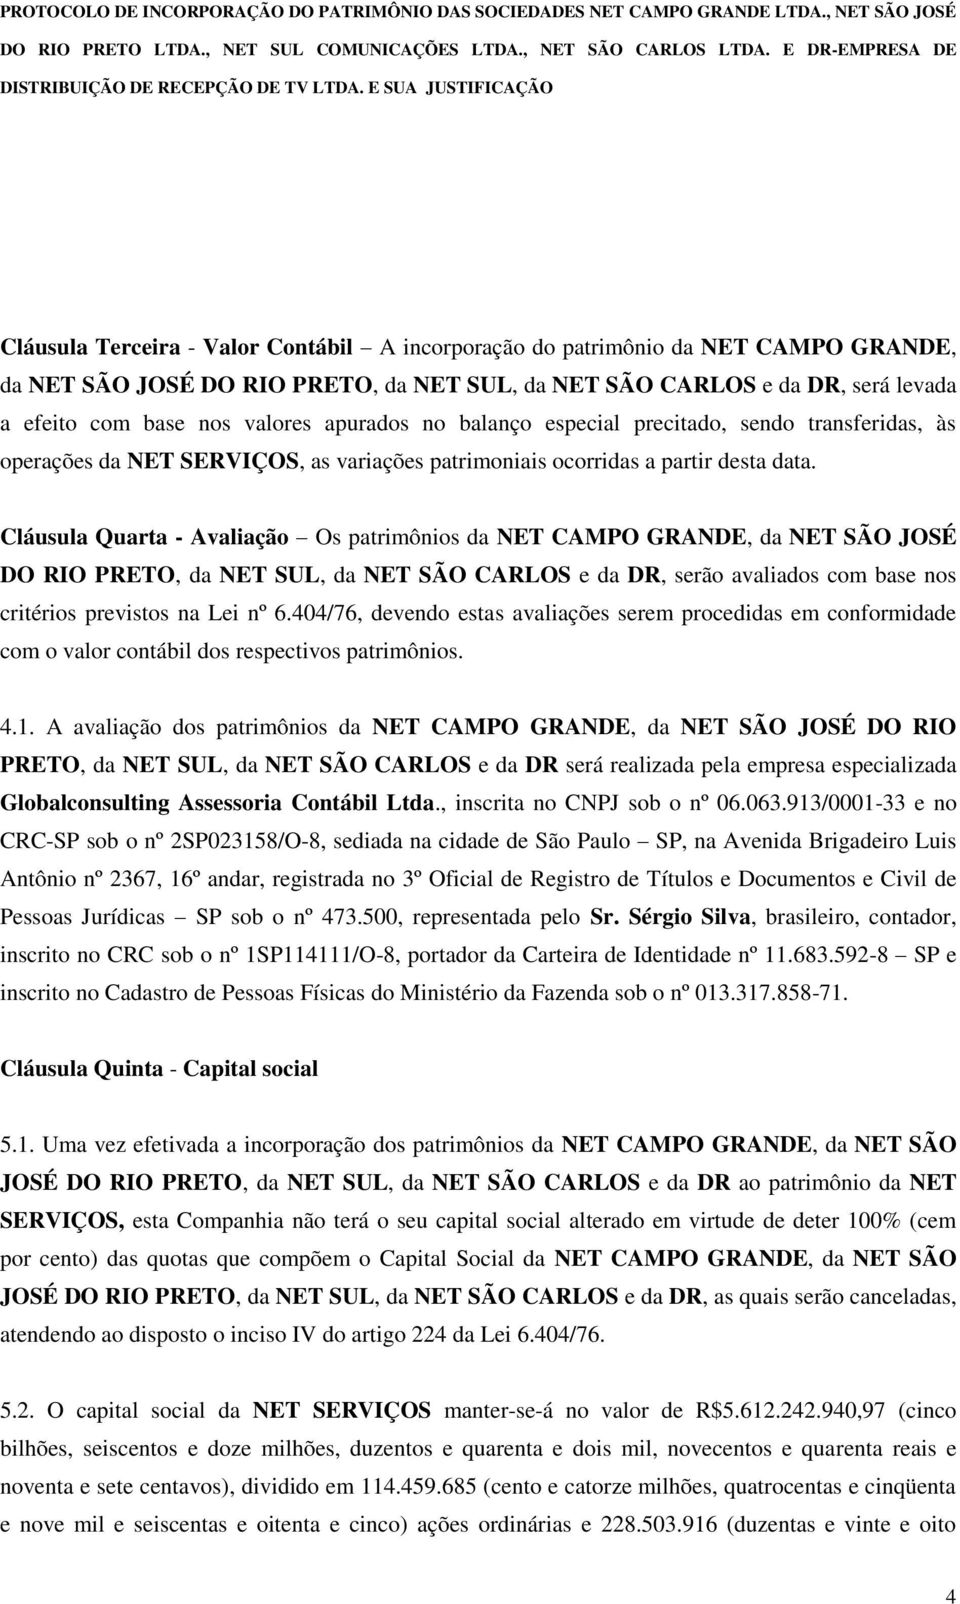 Cláusula Quarta - Avaliação Os patrimônios da NET CAMPO GRANDE, da NET SÃO JOSÉ DO RIO PRETO, da NET SUL, da NET SÃO CARLOS e da DR, serão avaliados com base nos critérios previstos na Lei nº 6.